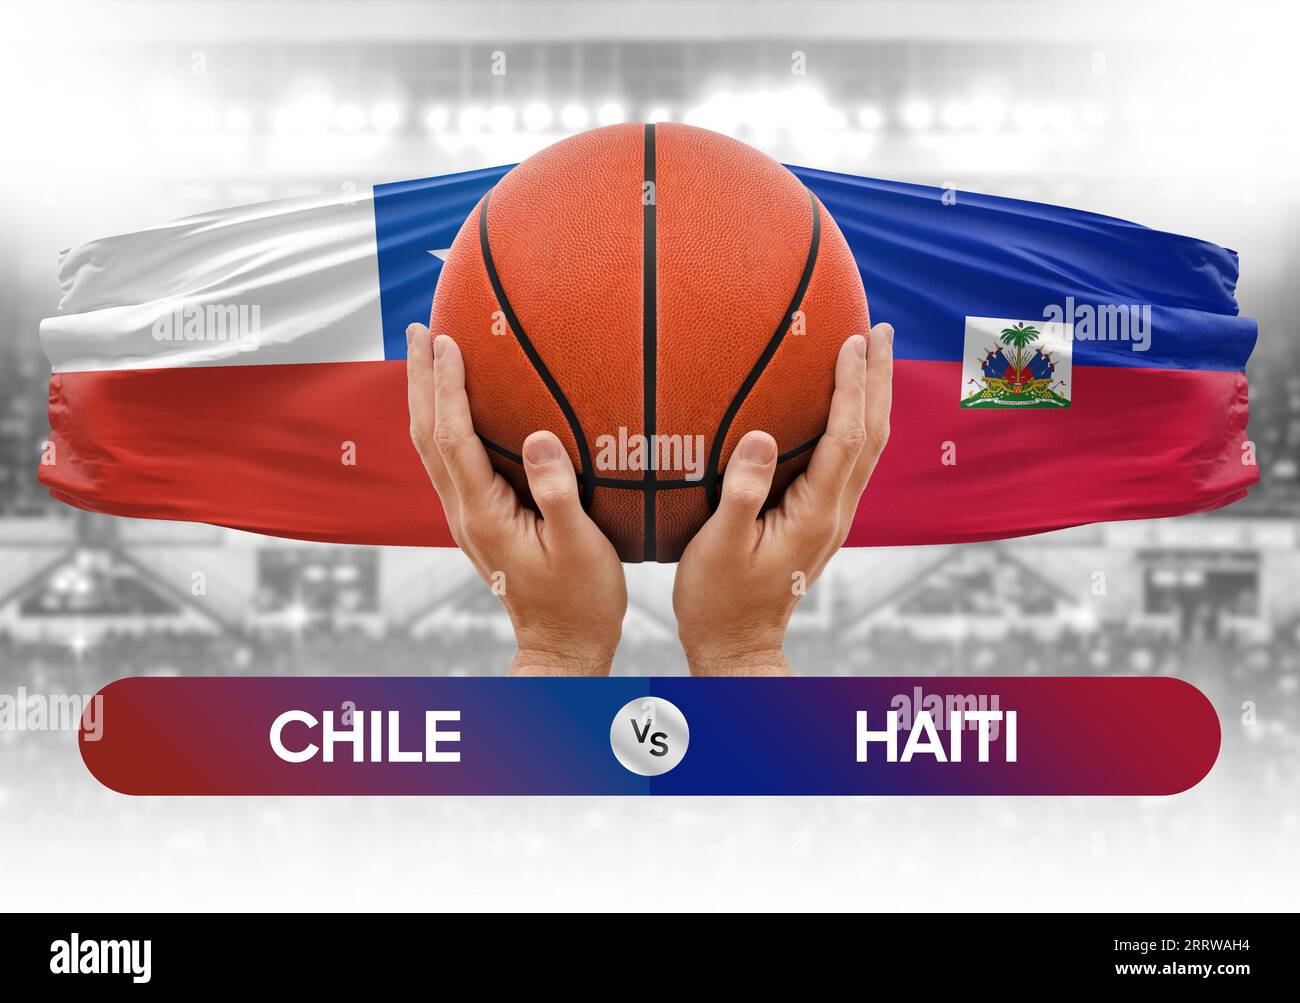 Chile vs Haiti Basketball-Nationalmannschaften Basketballspiel Wettbewerb Cup Konzept Bild Stockfoto